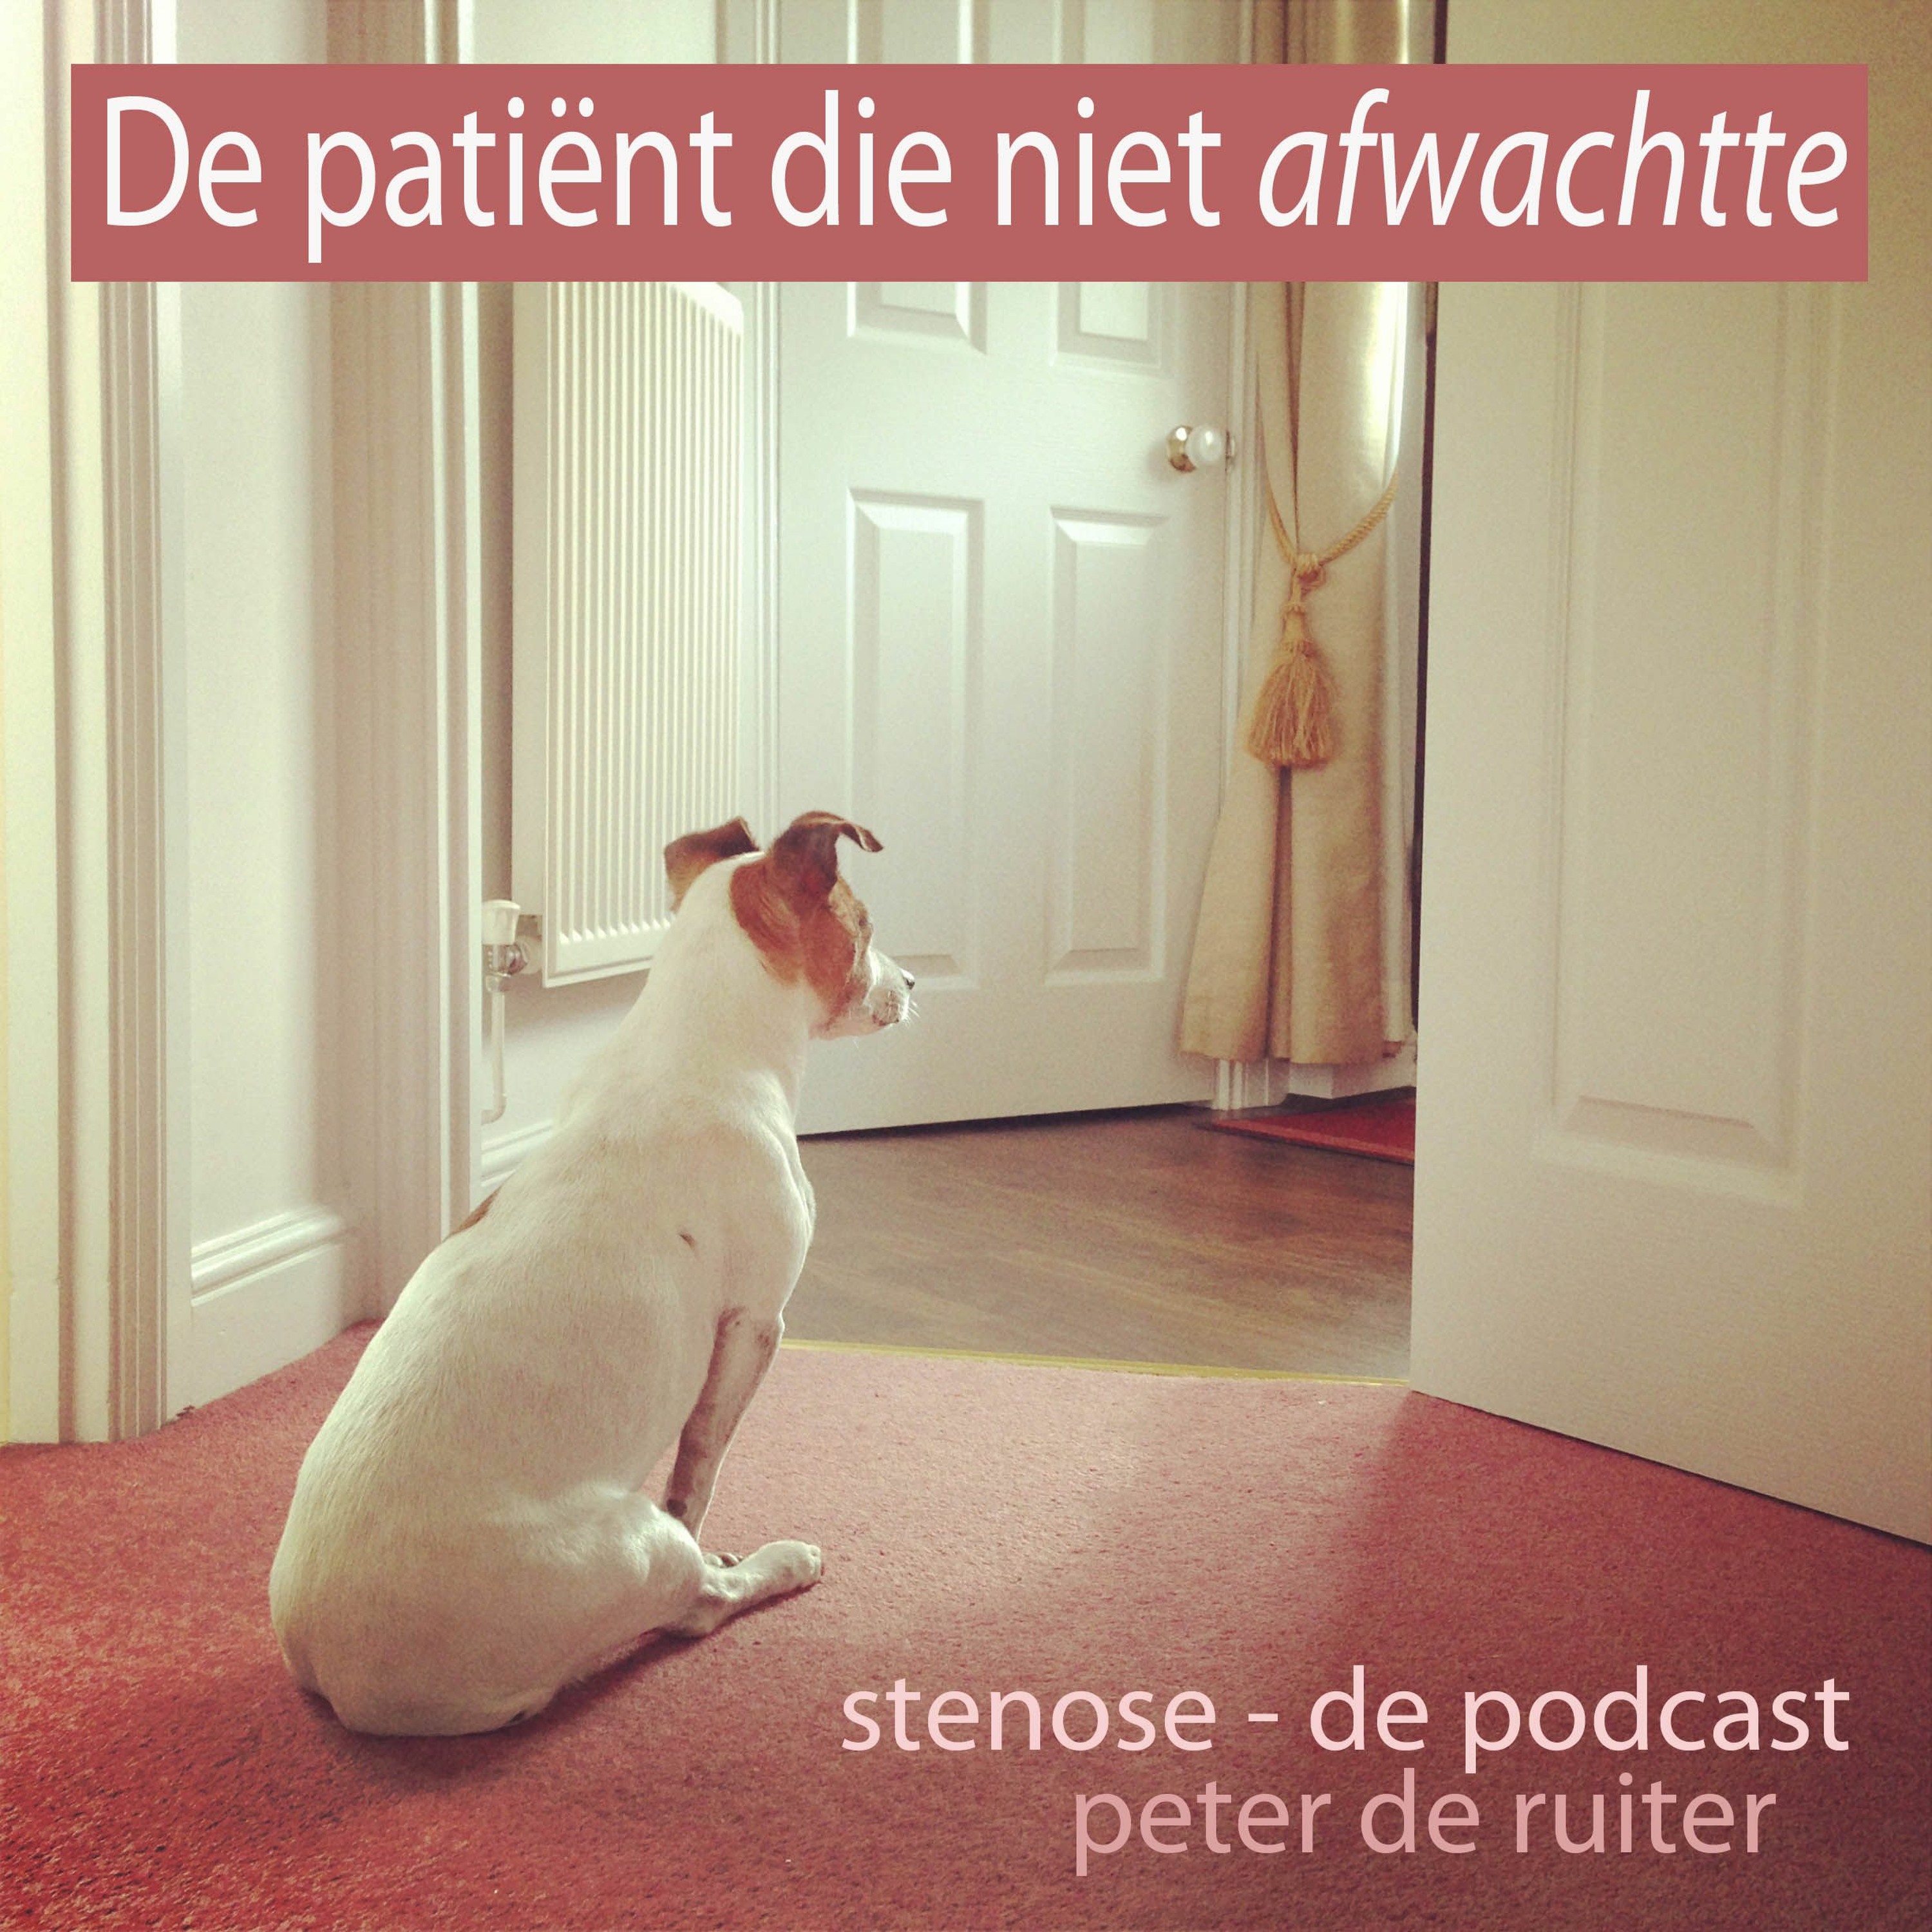 De patiënt die niet afwachtte / stenose - de podcast